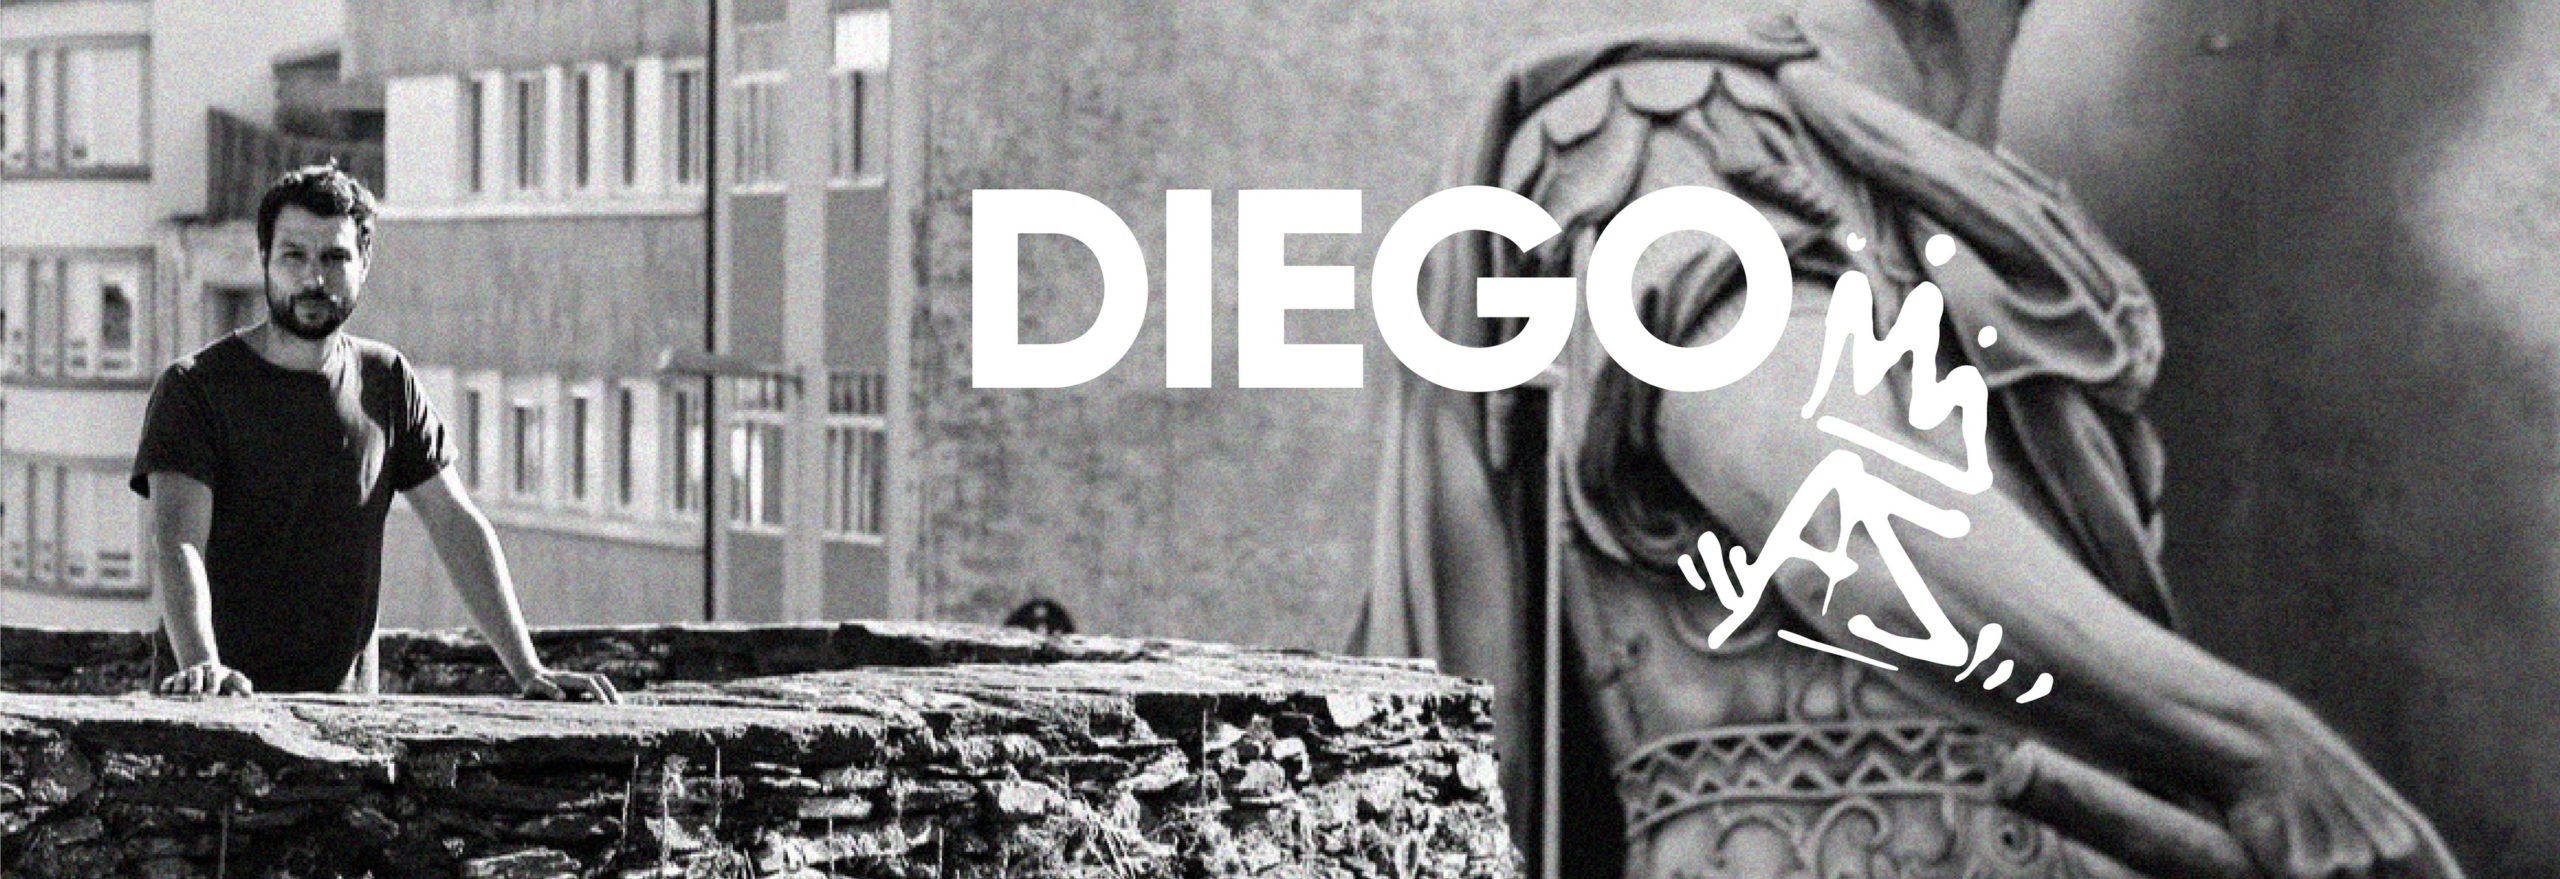 Foto de Diego posando en la muralla de Lugo con su graffiti del Julio Cesar de fondo y su firma DiegoAS